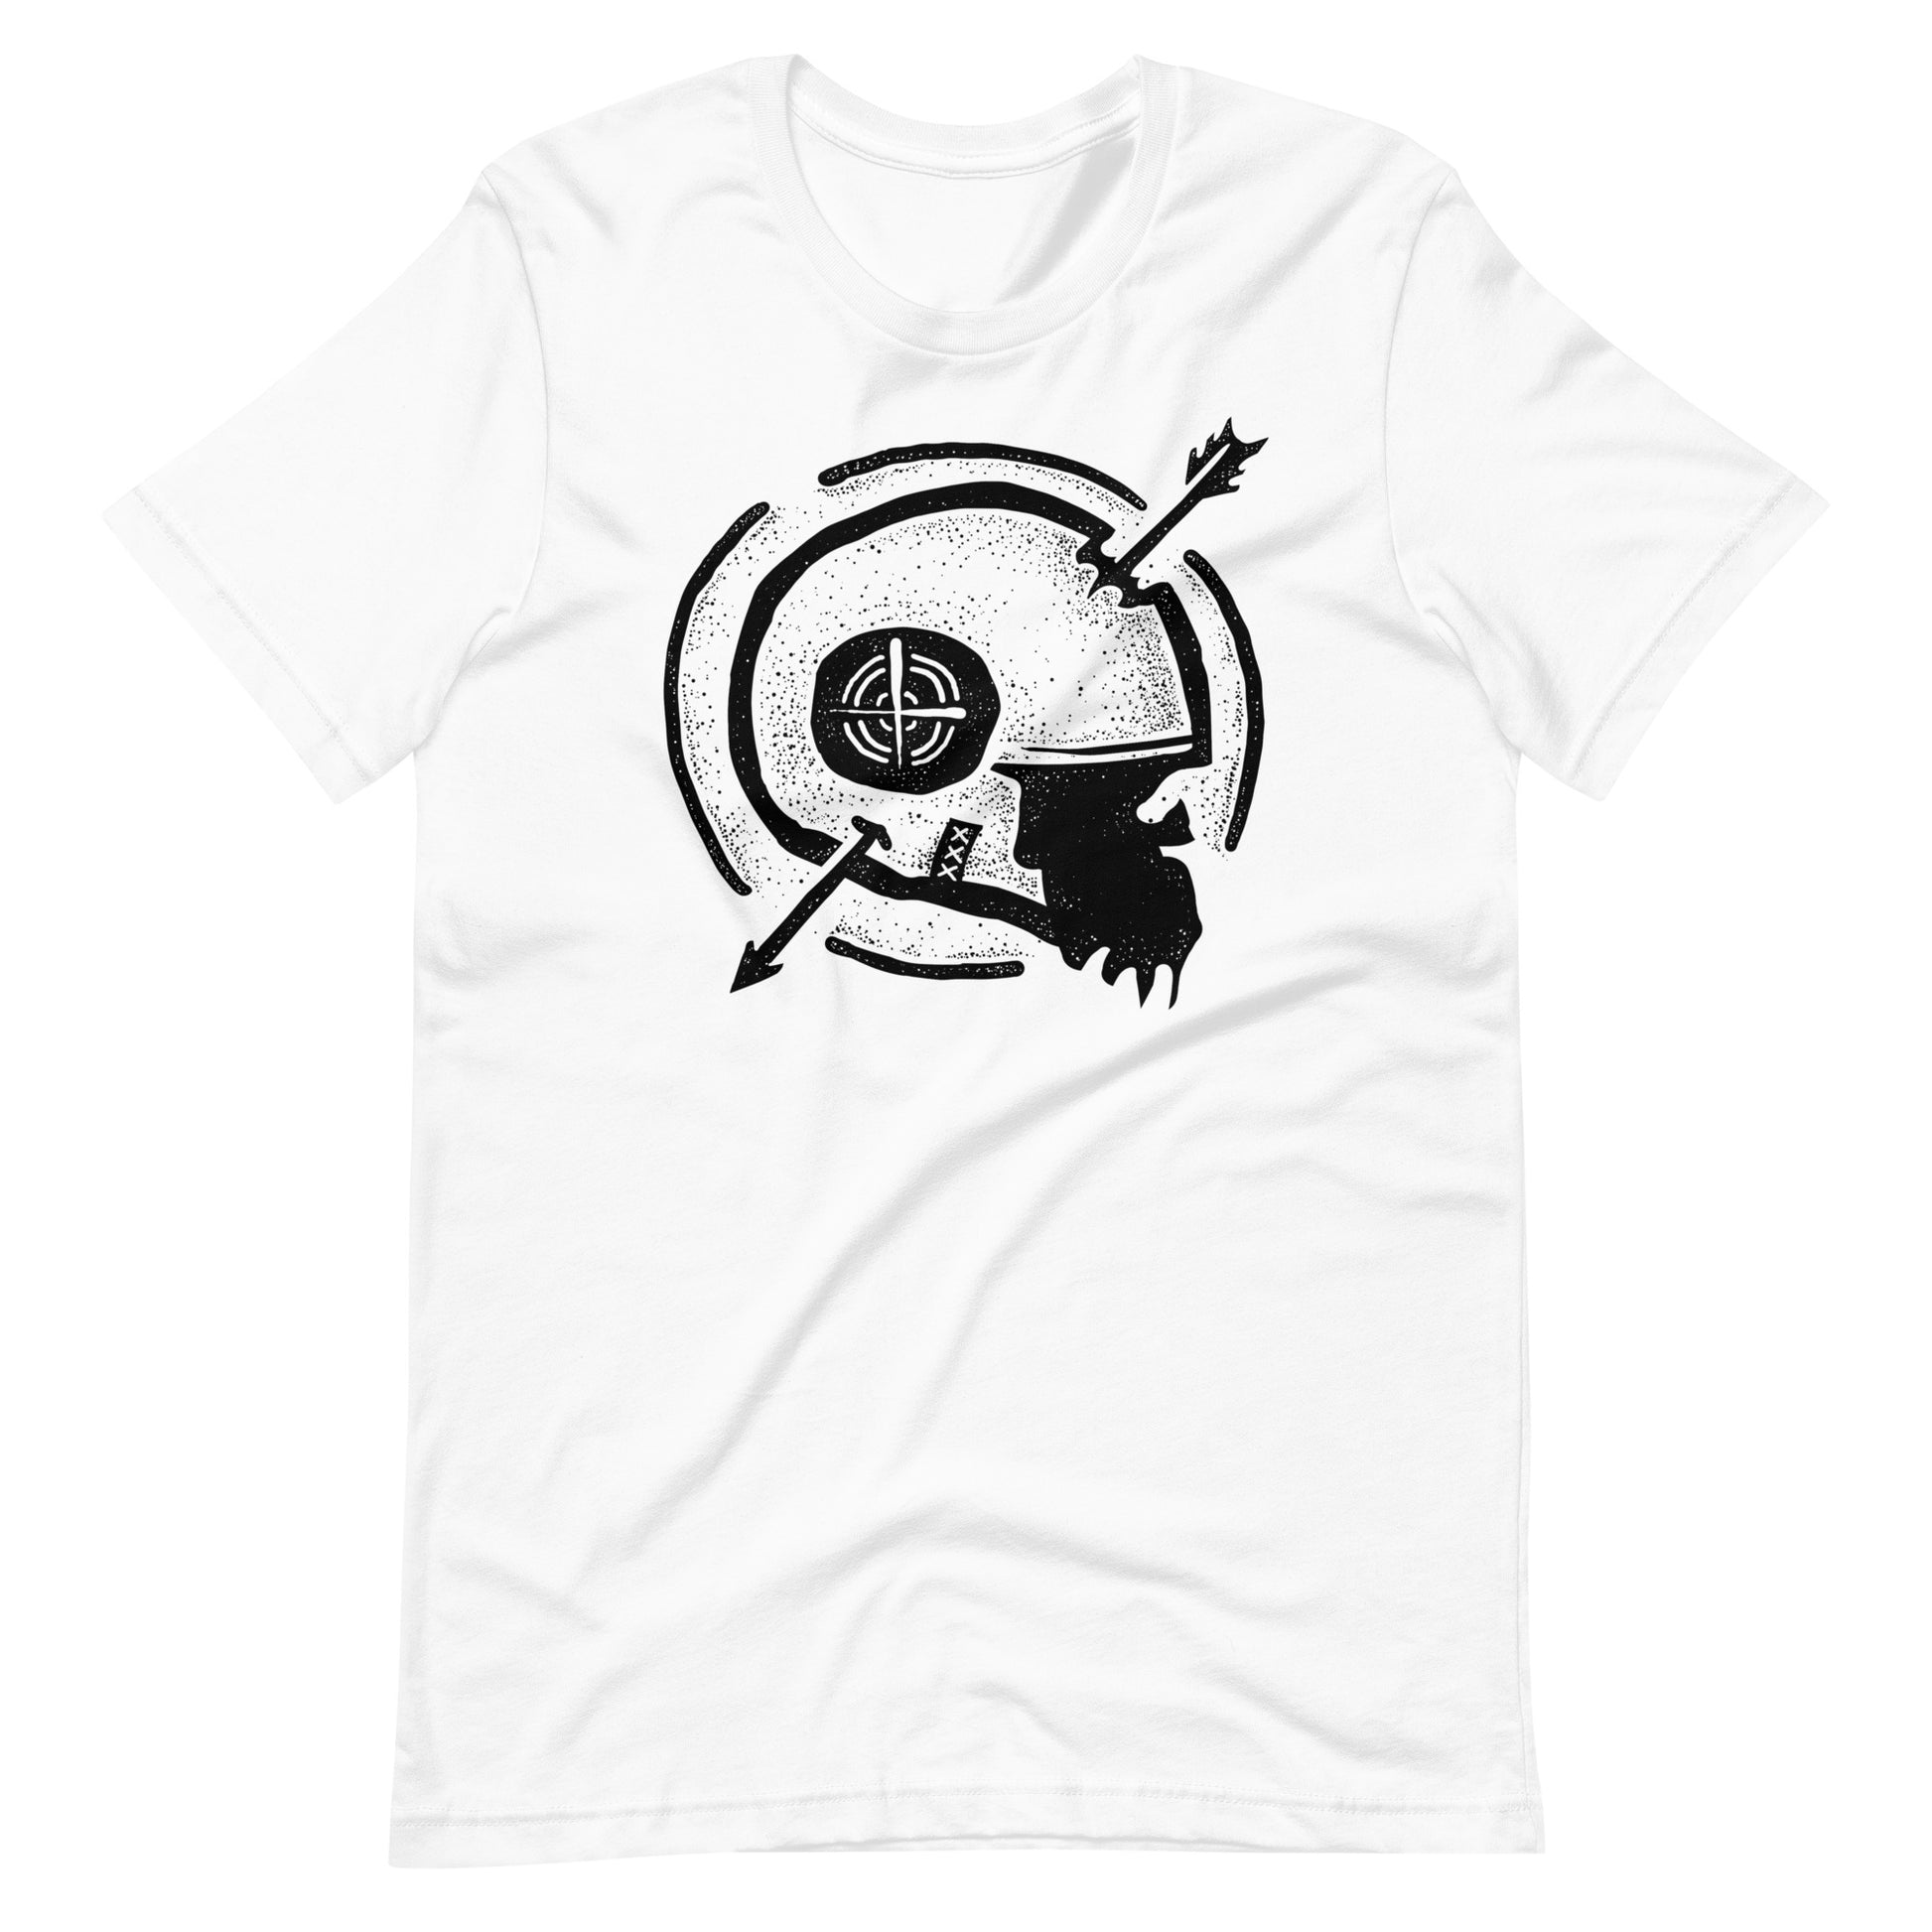 Dead Arrow Black - Men's t-shirt - White Front